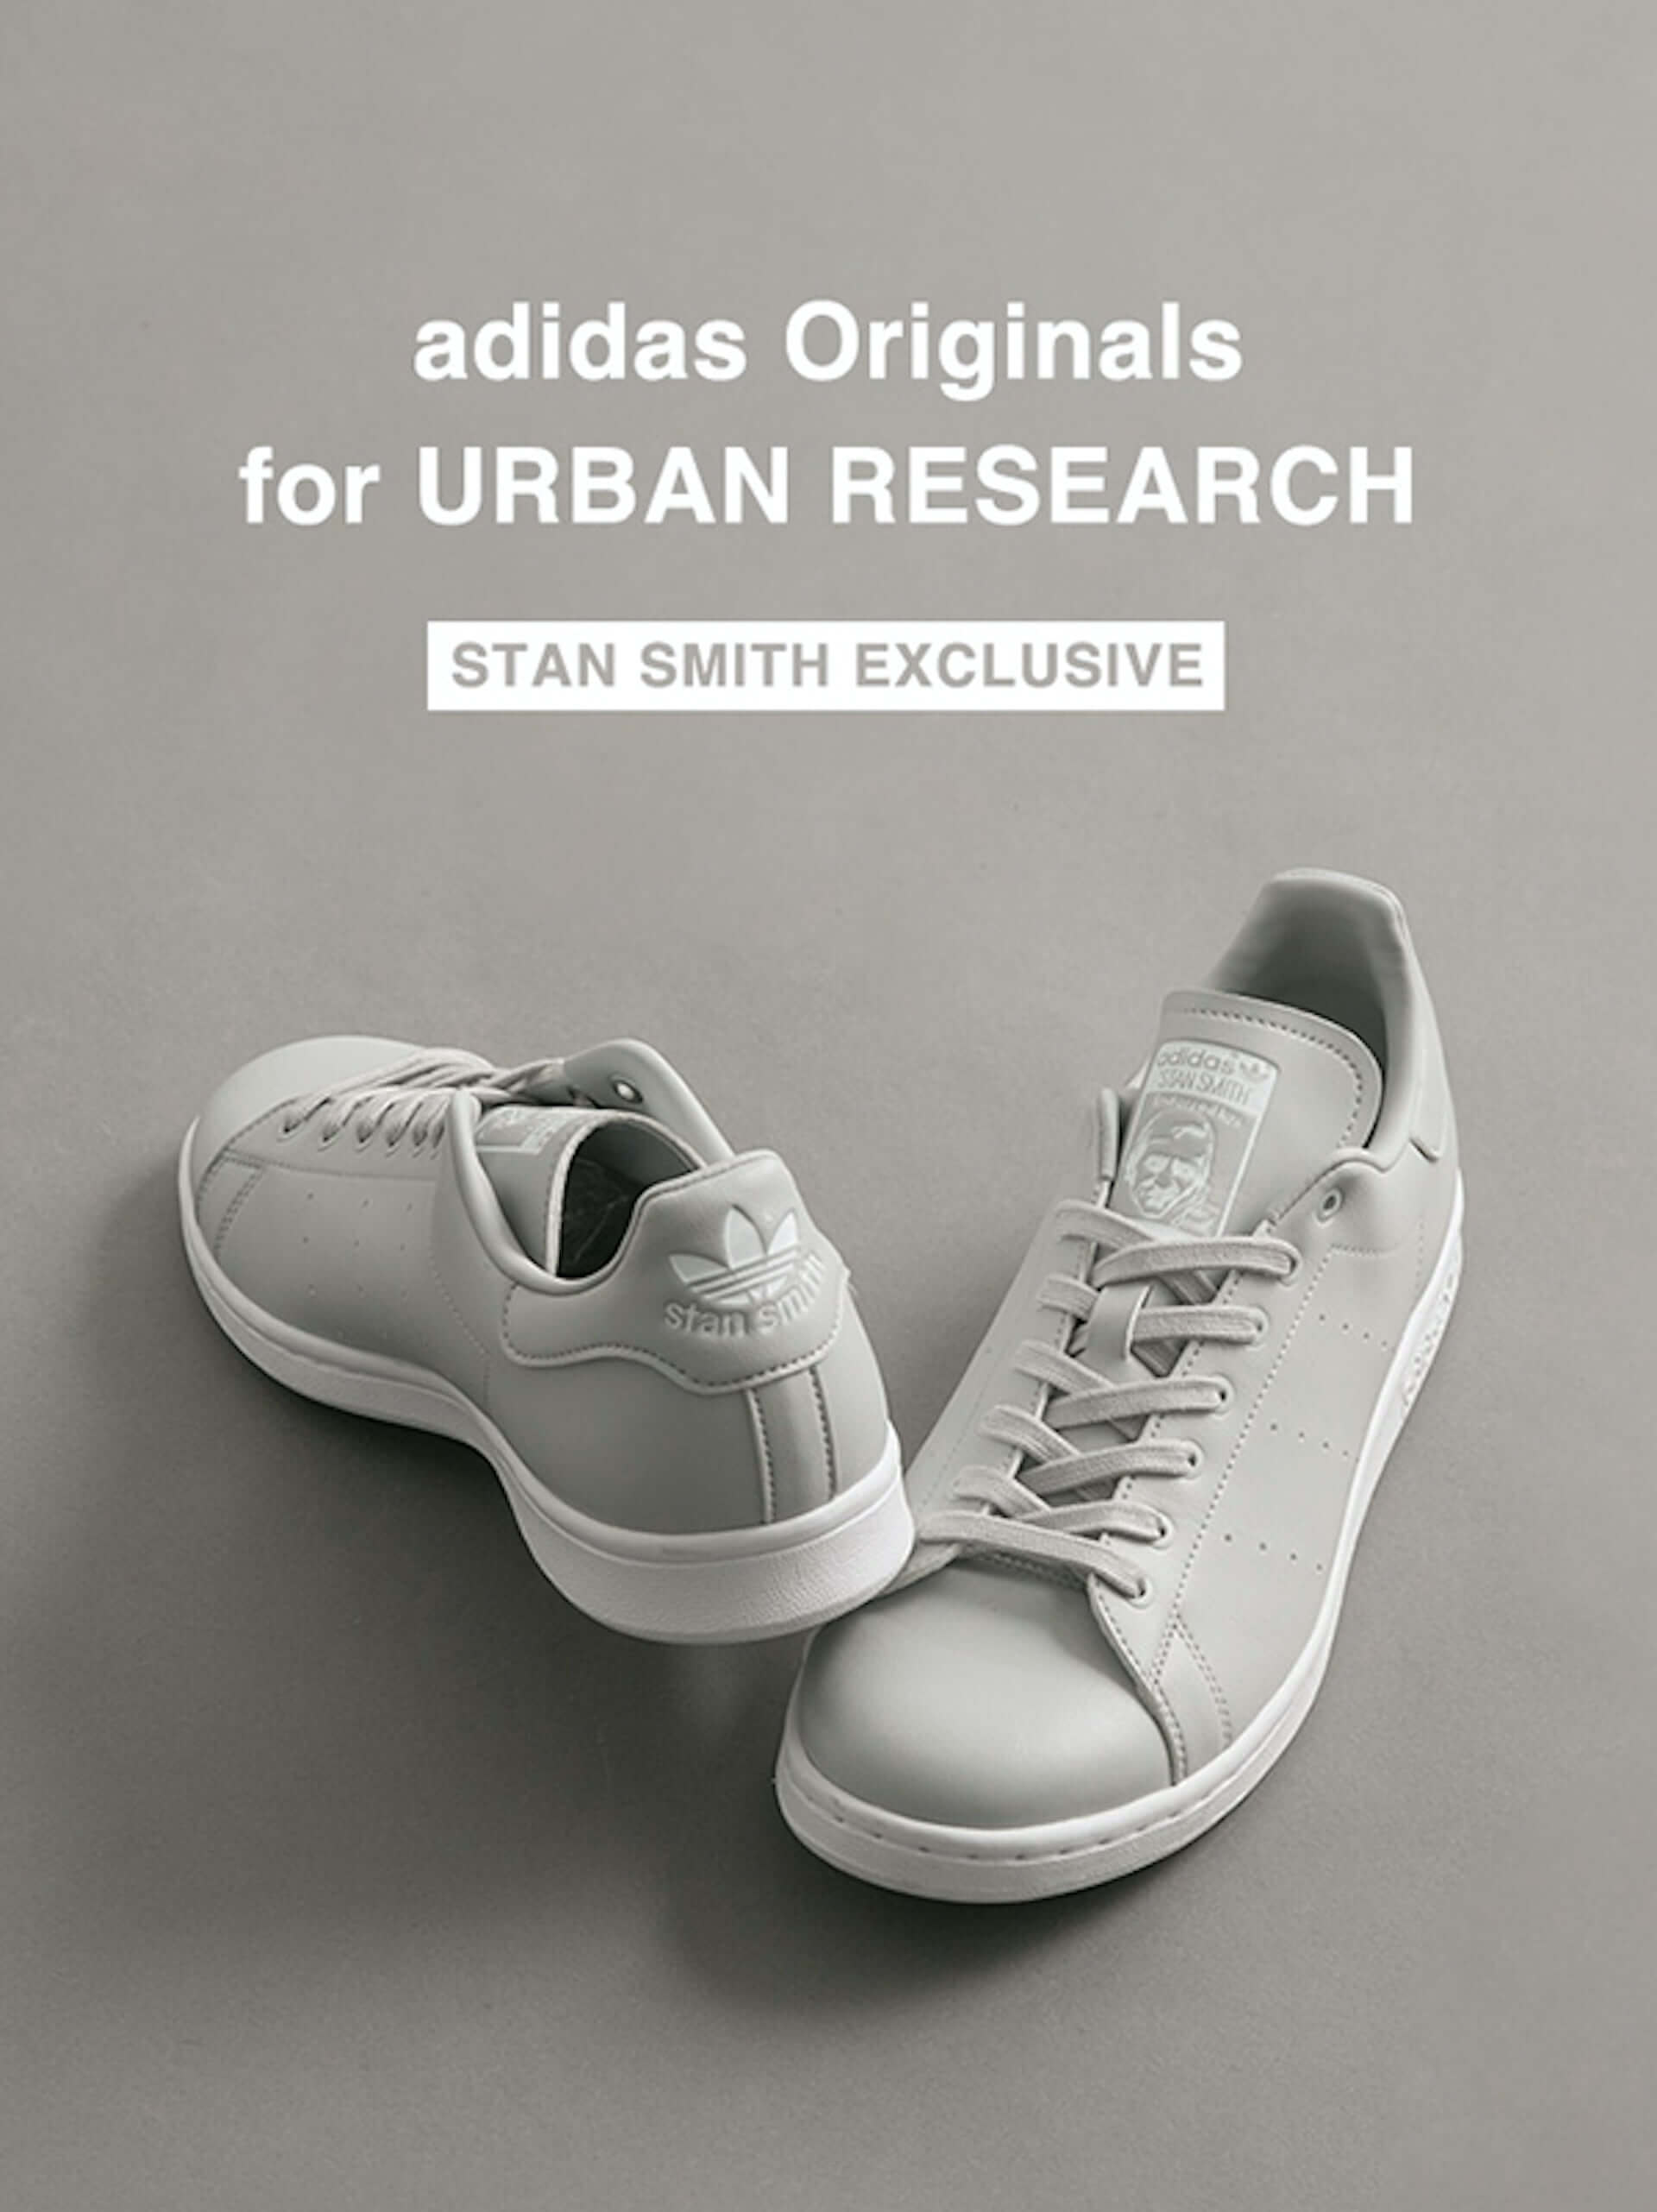 adidas Originalsの名作スニーカー『STAN SMITH』にURBAN RESEARCH別注モデルが登場！グレーで統一されたミニマルデザインに注目 lf210301_adidas-urbanresearch_1-1920x2563